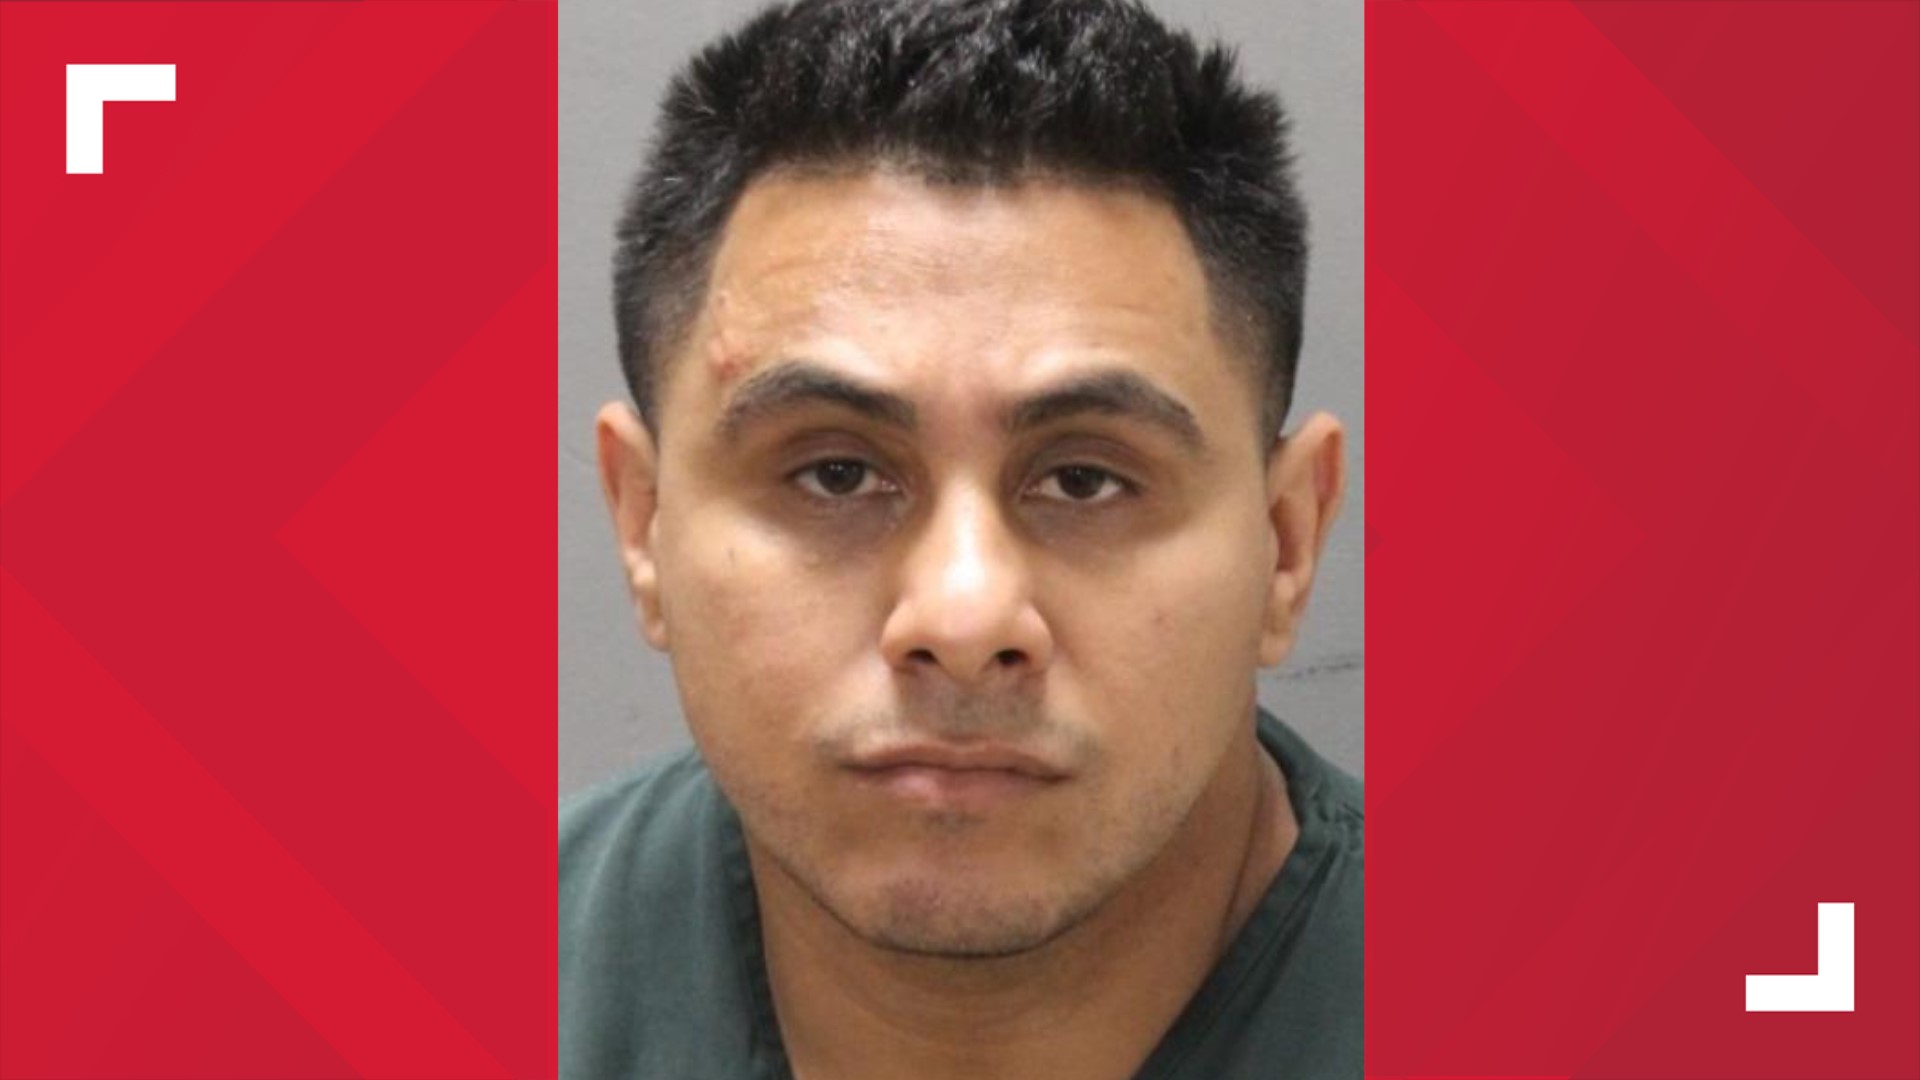 Ariel Monteagudo was arrested in the crash that killed  Trenton Stewart.